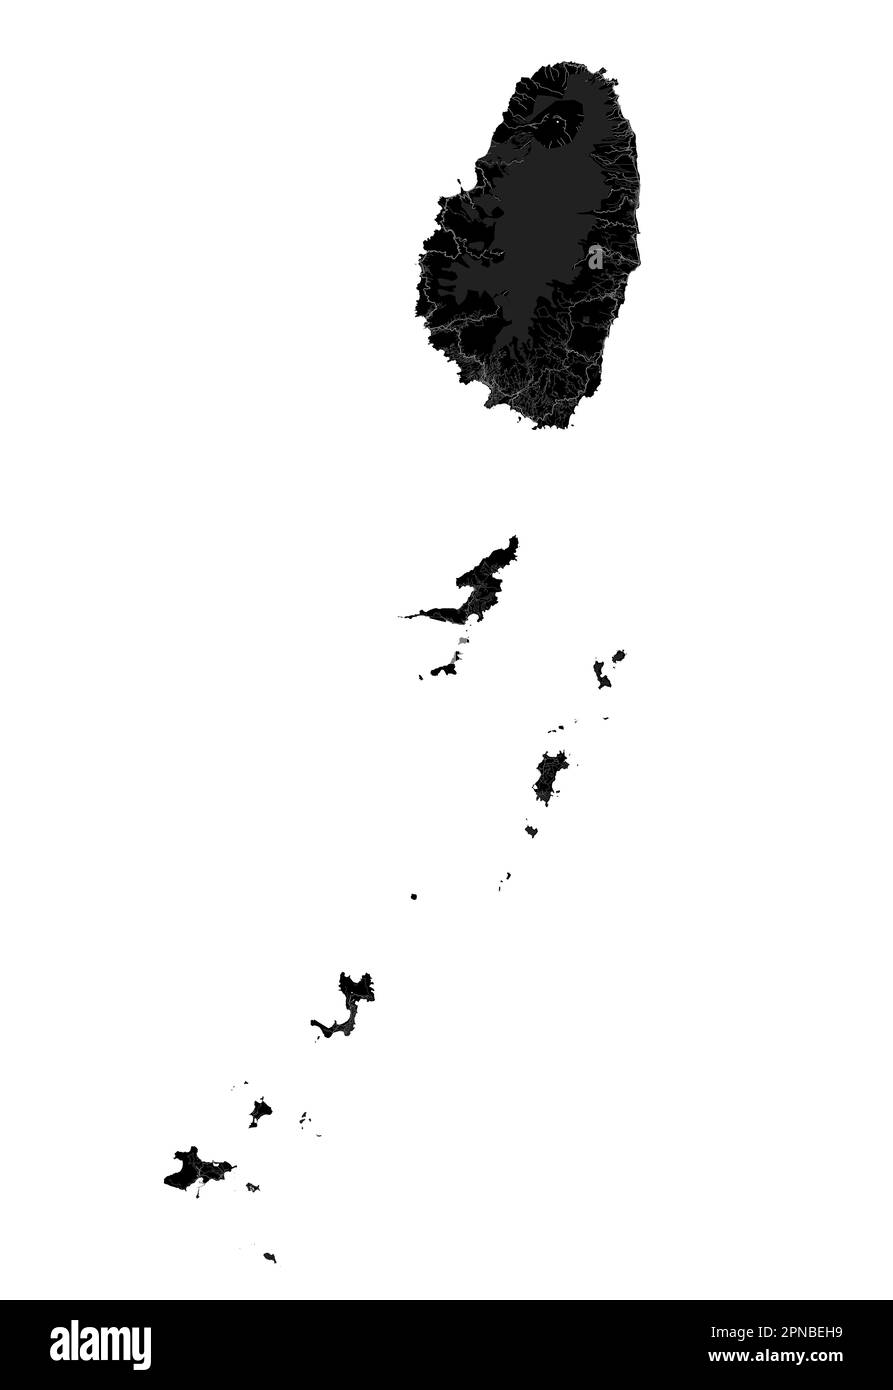 Schwarzer St. Vincent und die Grenadinen Karte, karibisches Inselland. Detaillierte Karte mit Verwaltungsgrenze, Küste, Meer und Wäldern, Städten und Stock Vektor